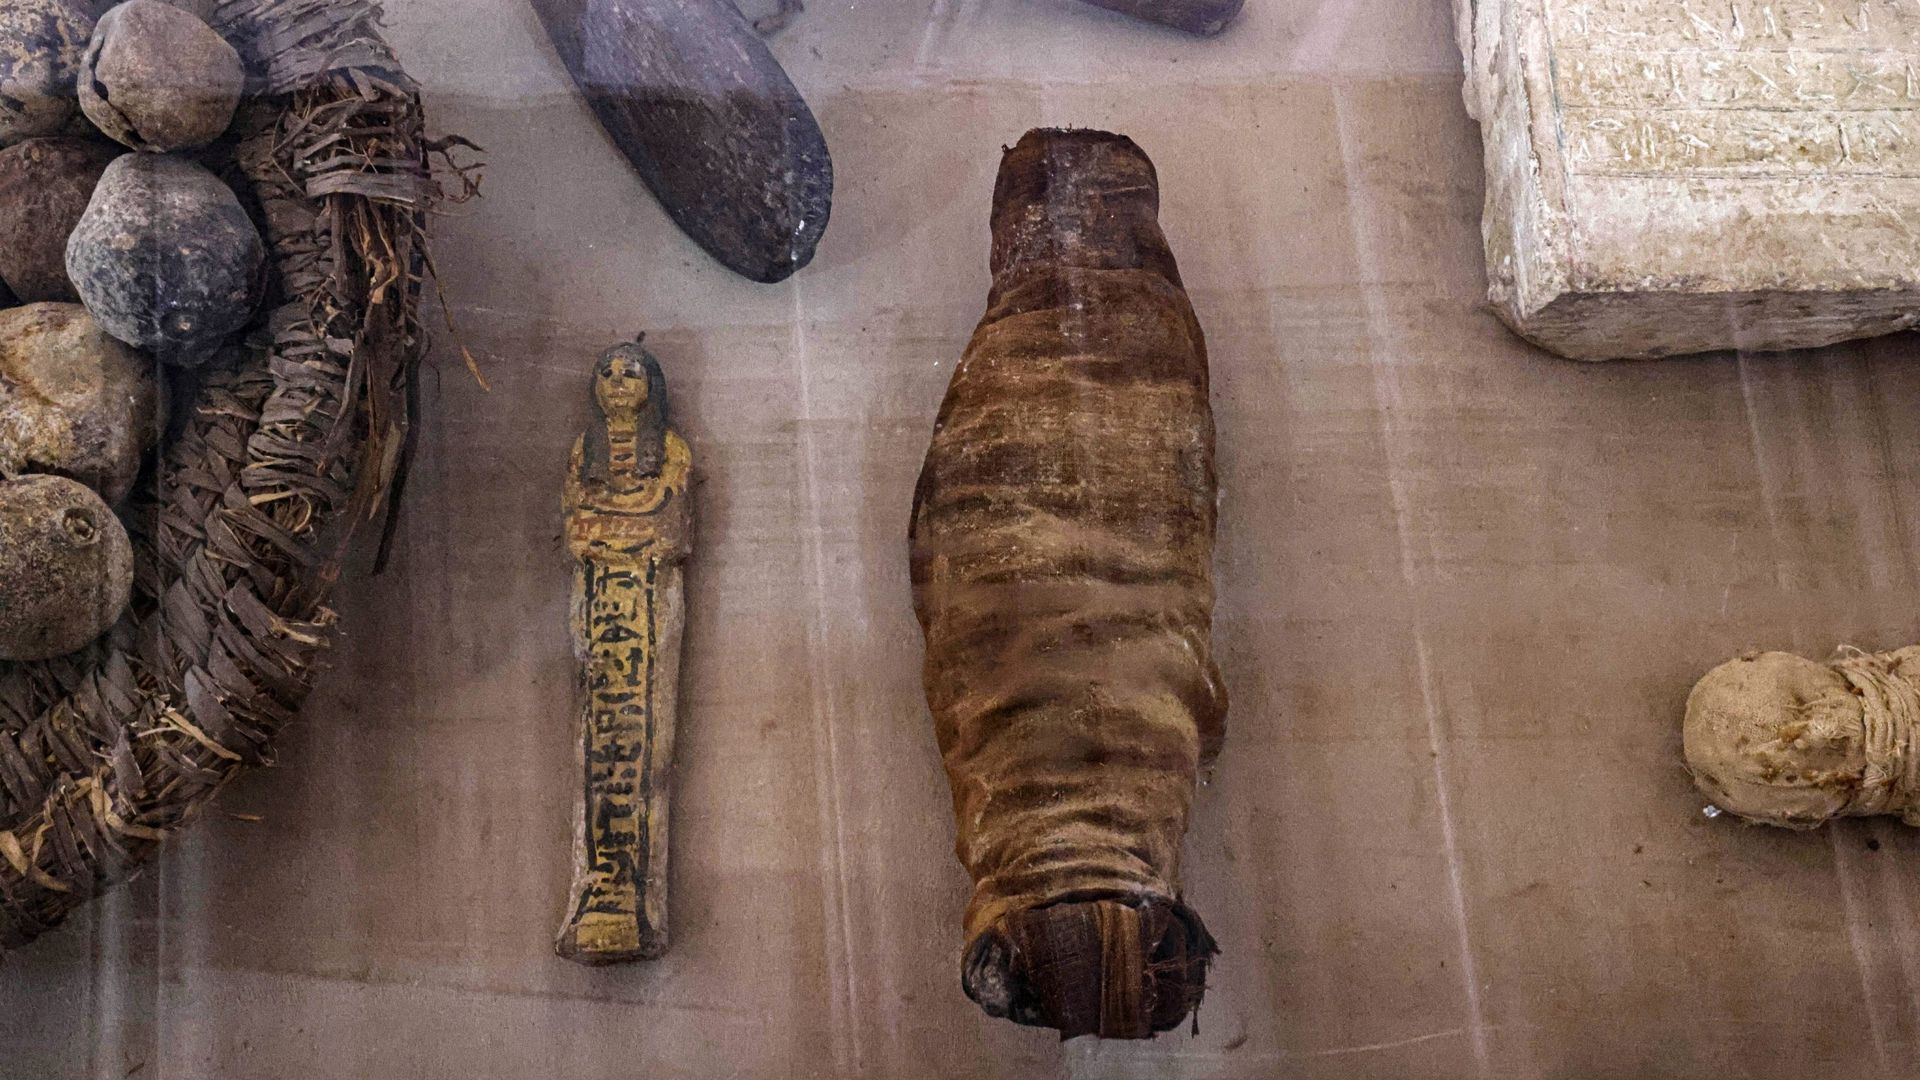 De petits animaux momifiés récemment découverts sont exposés parmi d’autres objets à la nécropole de Saqqarah où des archéologues ont mis au jour deux ateliers d’embaumement humains et animaux ainsi que deux tombes, au sud du Caire le 27 mai 2023.